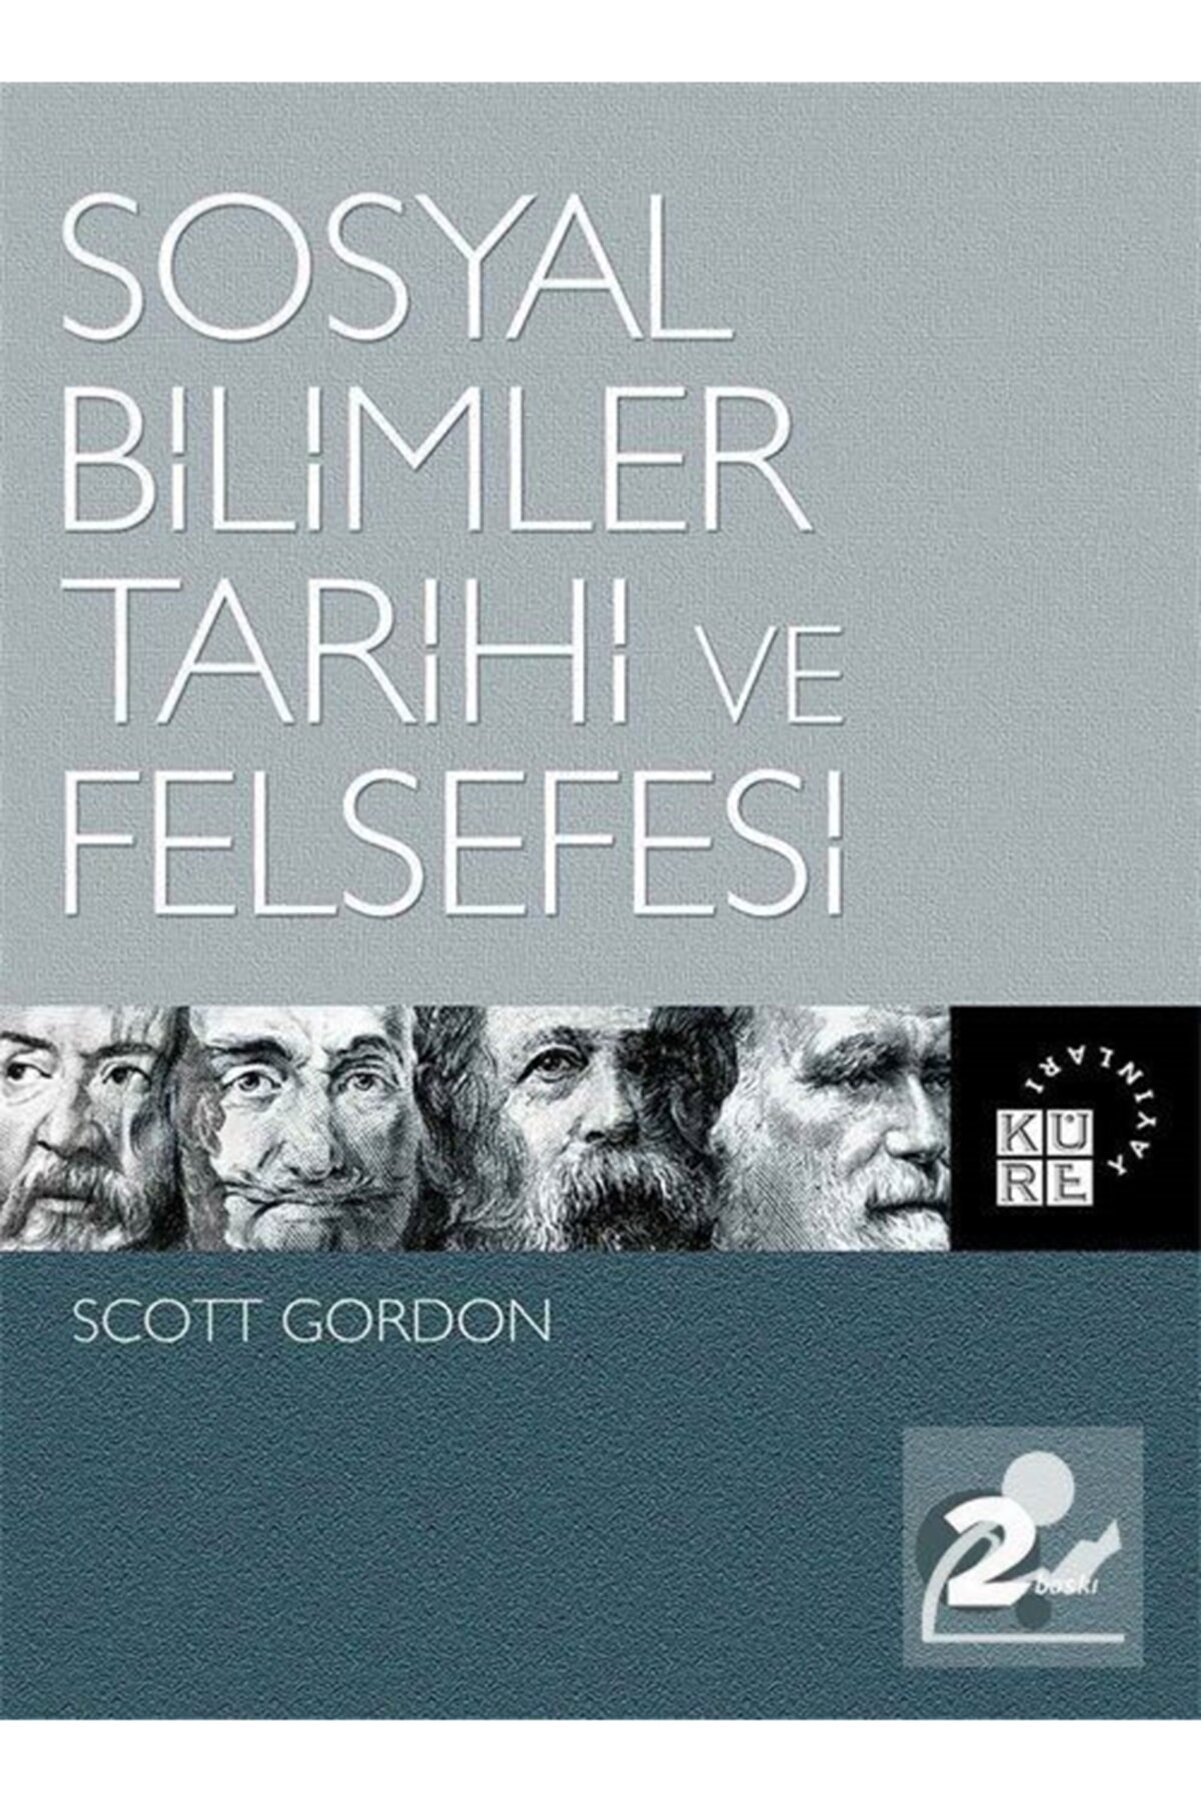 Küre Yayınları Sosyal Bilimler Tarihi Ve Felsefesi